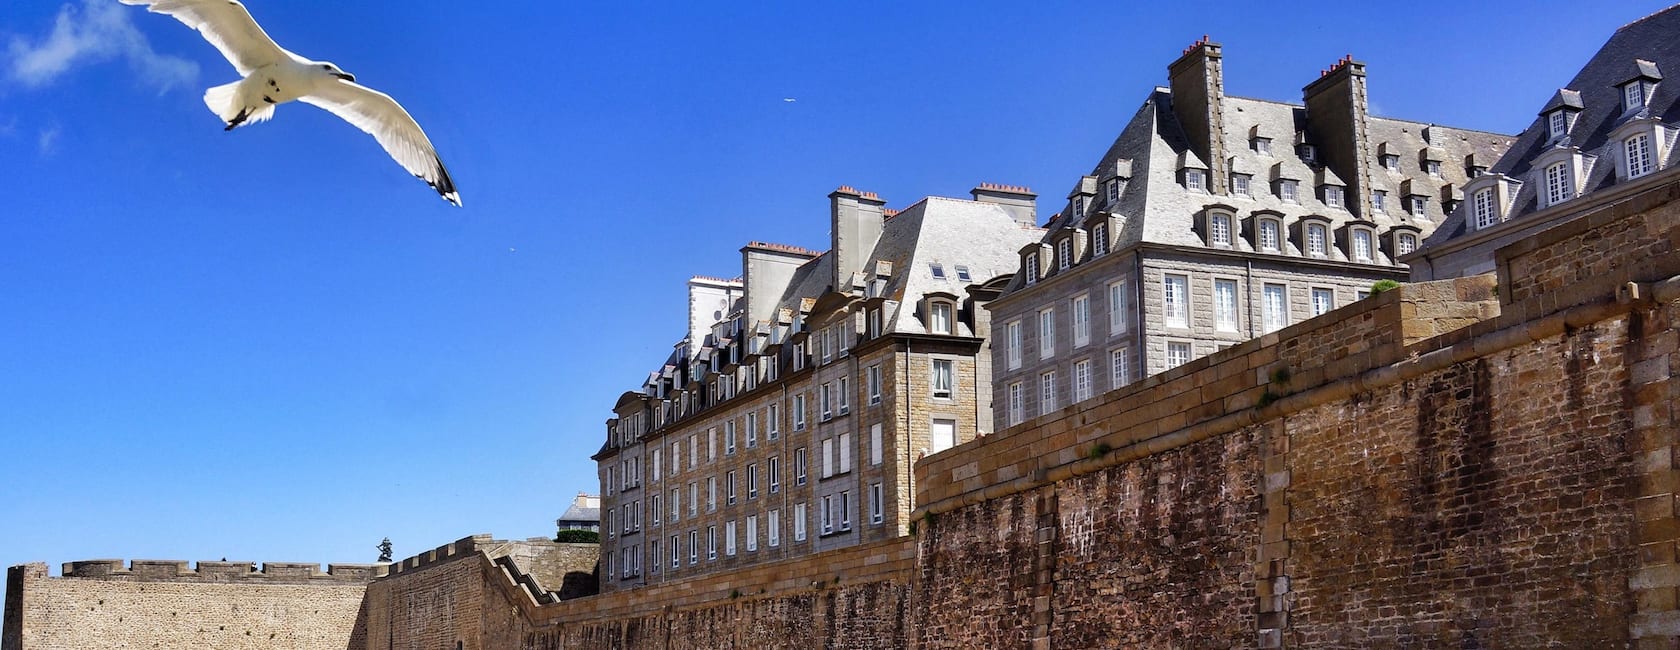 サン マロのバケーションレンタルと宿泊先 Brittany フランス Airbnb